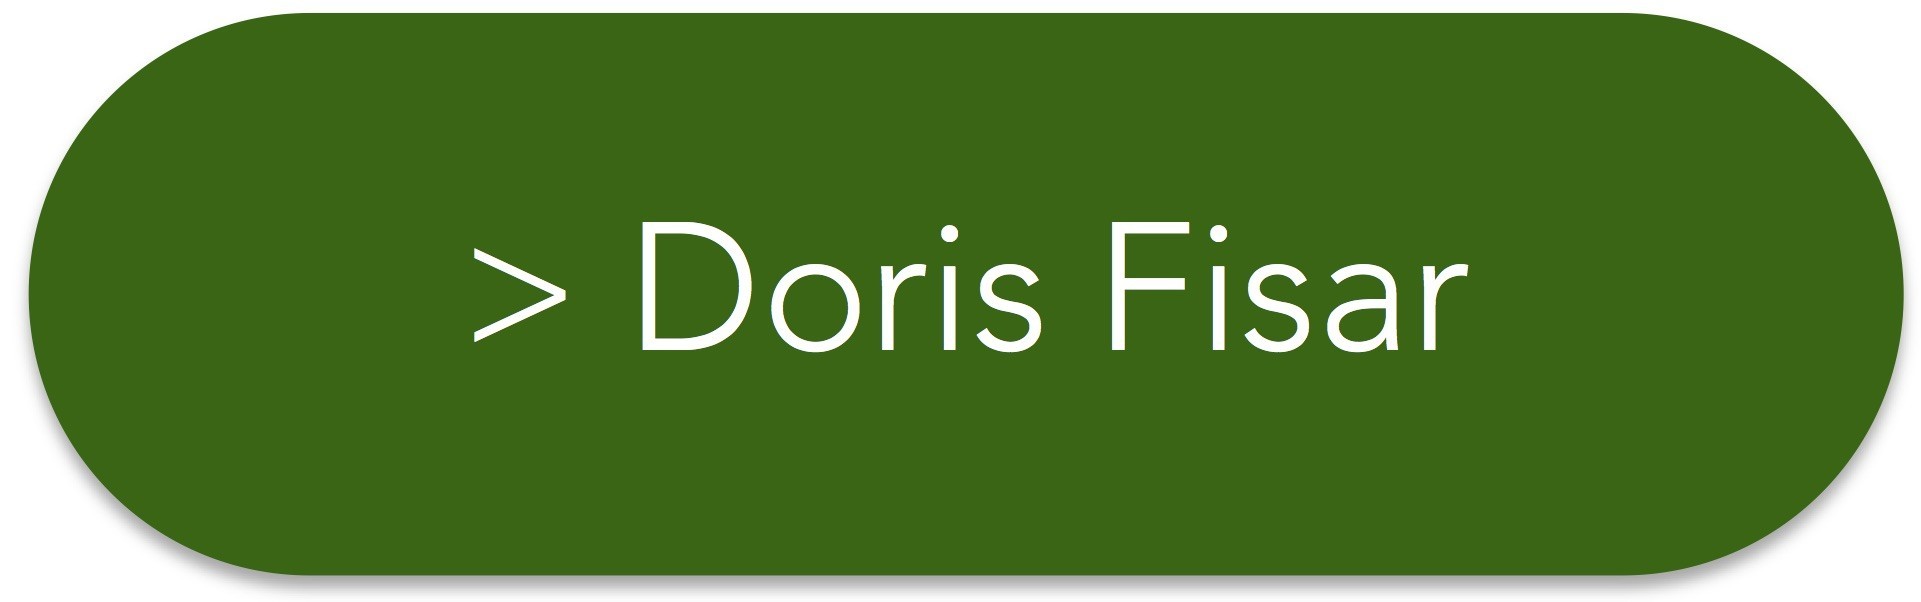 Doris Fisar (Button)